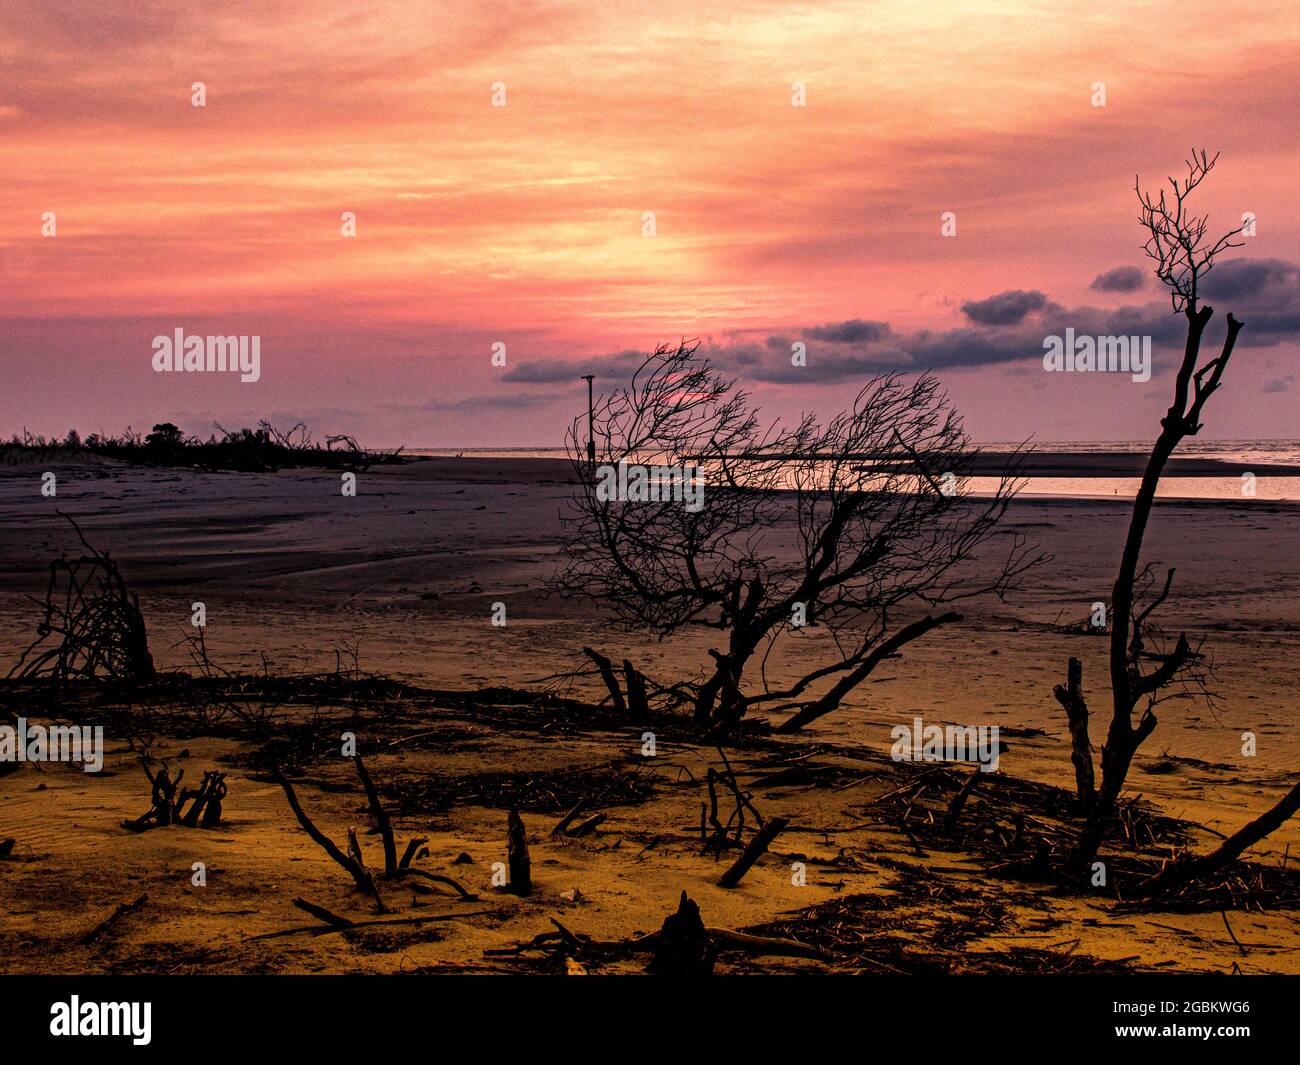 Mare di cieli rossi dorati mentre il sole del mattino sorge su un'isola panoramica barriera. Foto Stock